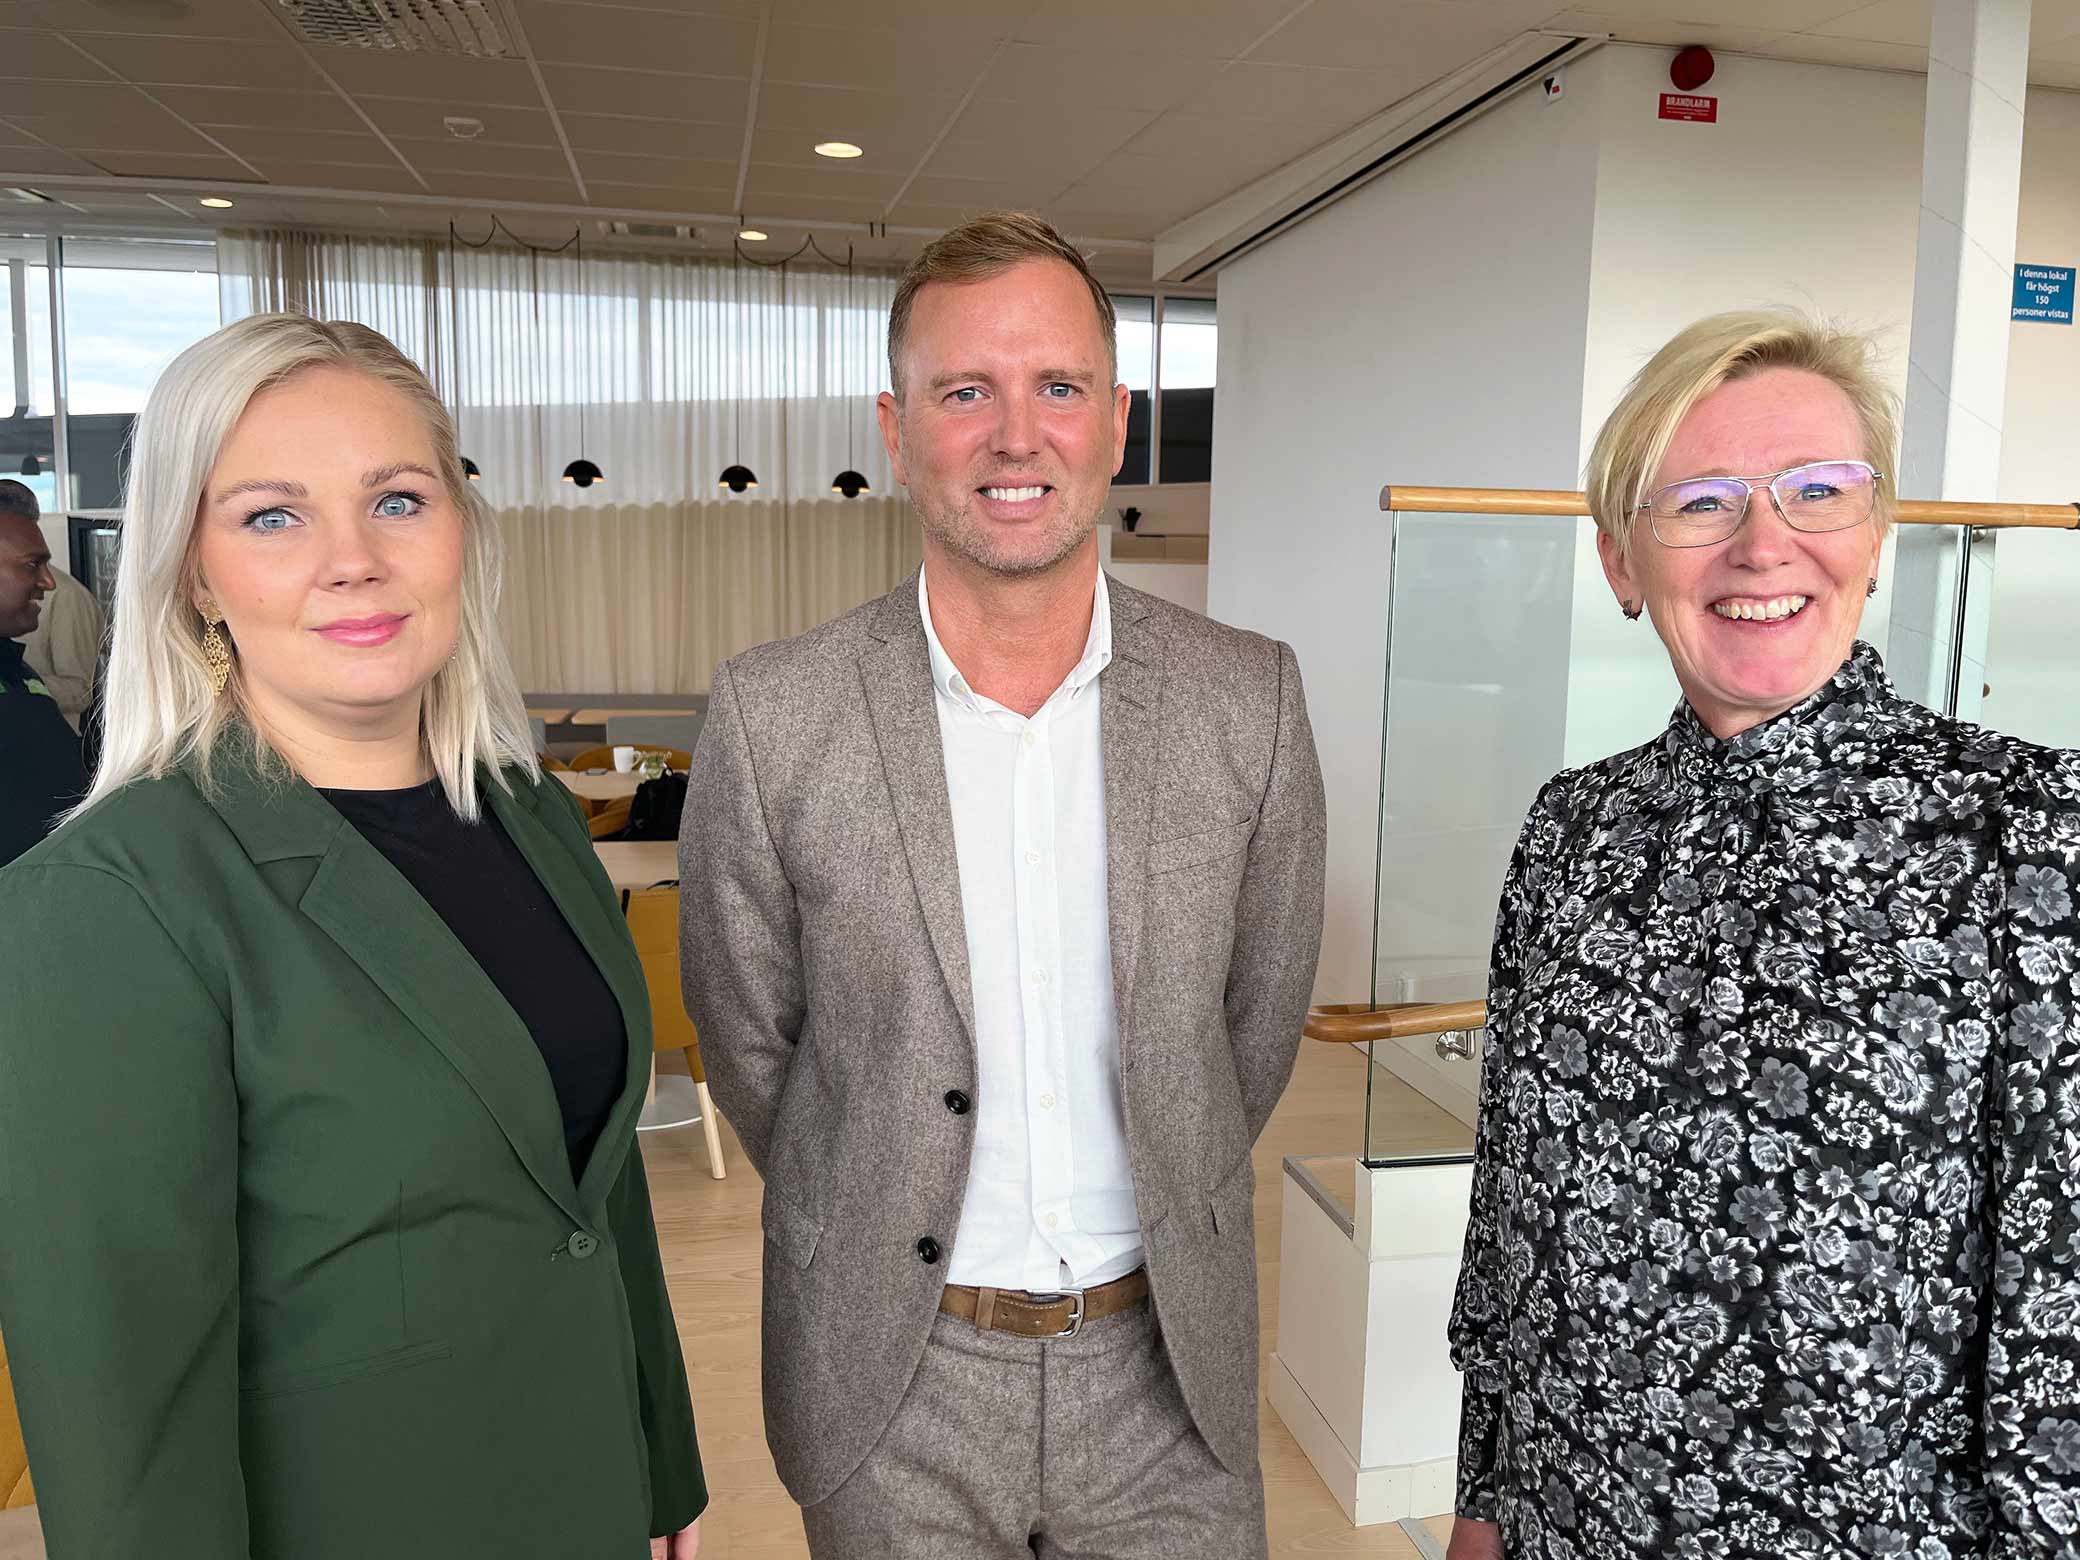 Erika Kers, upphandlare, Magnus Johansson, Företagarnas upphandlingsexpert och Marianne Lundberg, strateg på inköpsavdelningen tittar in i kameran och ser glada ut.